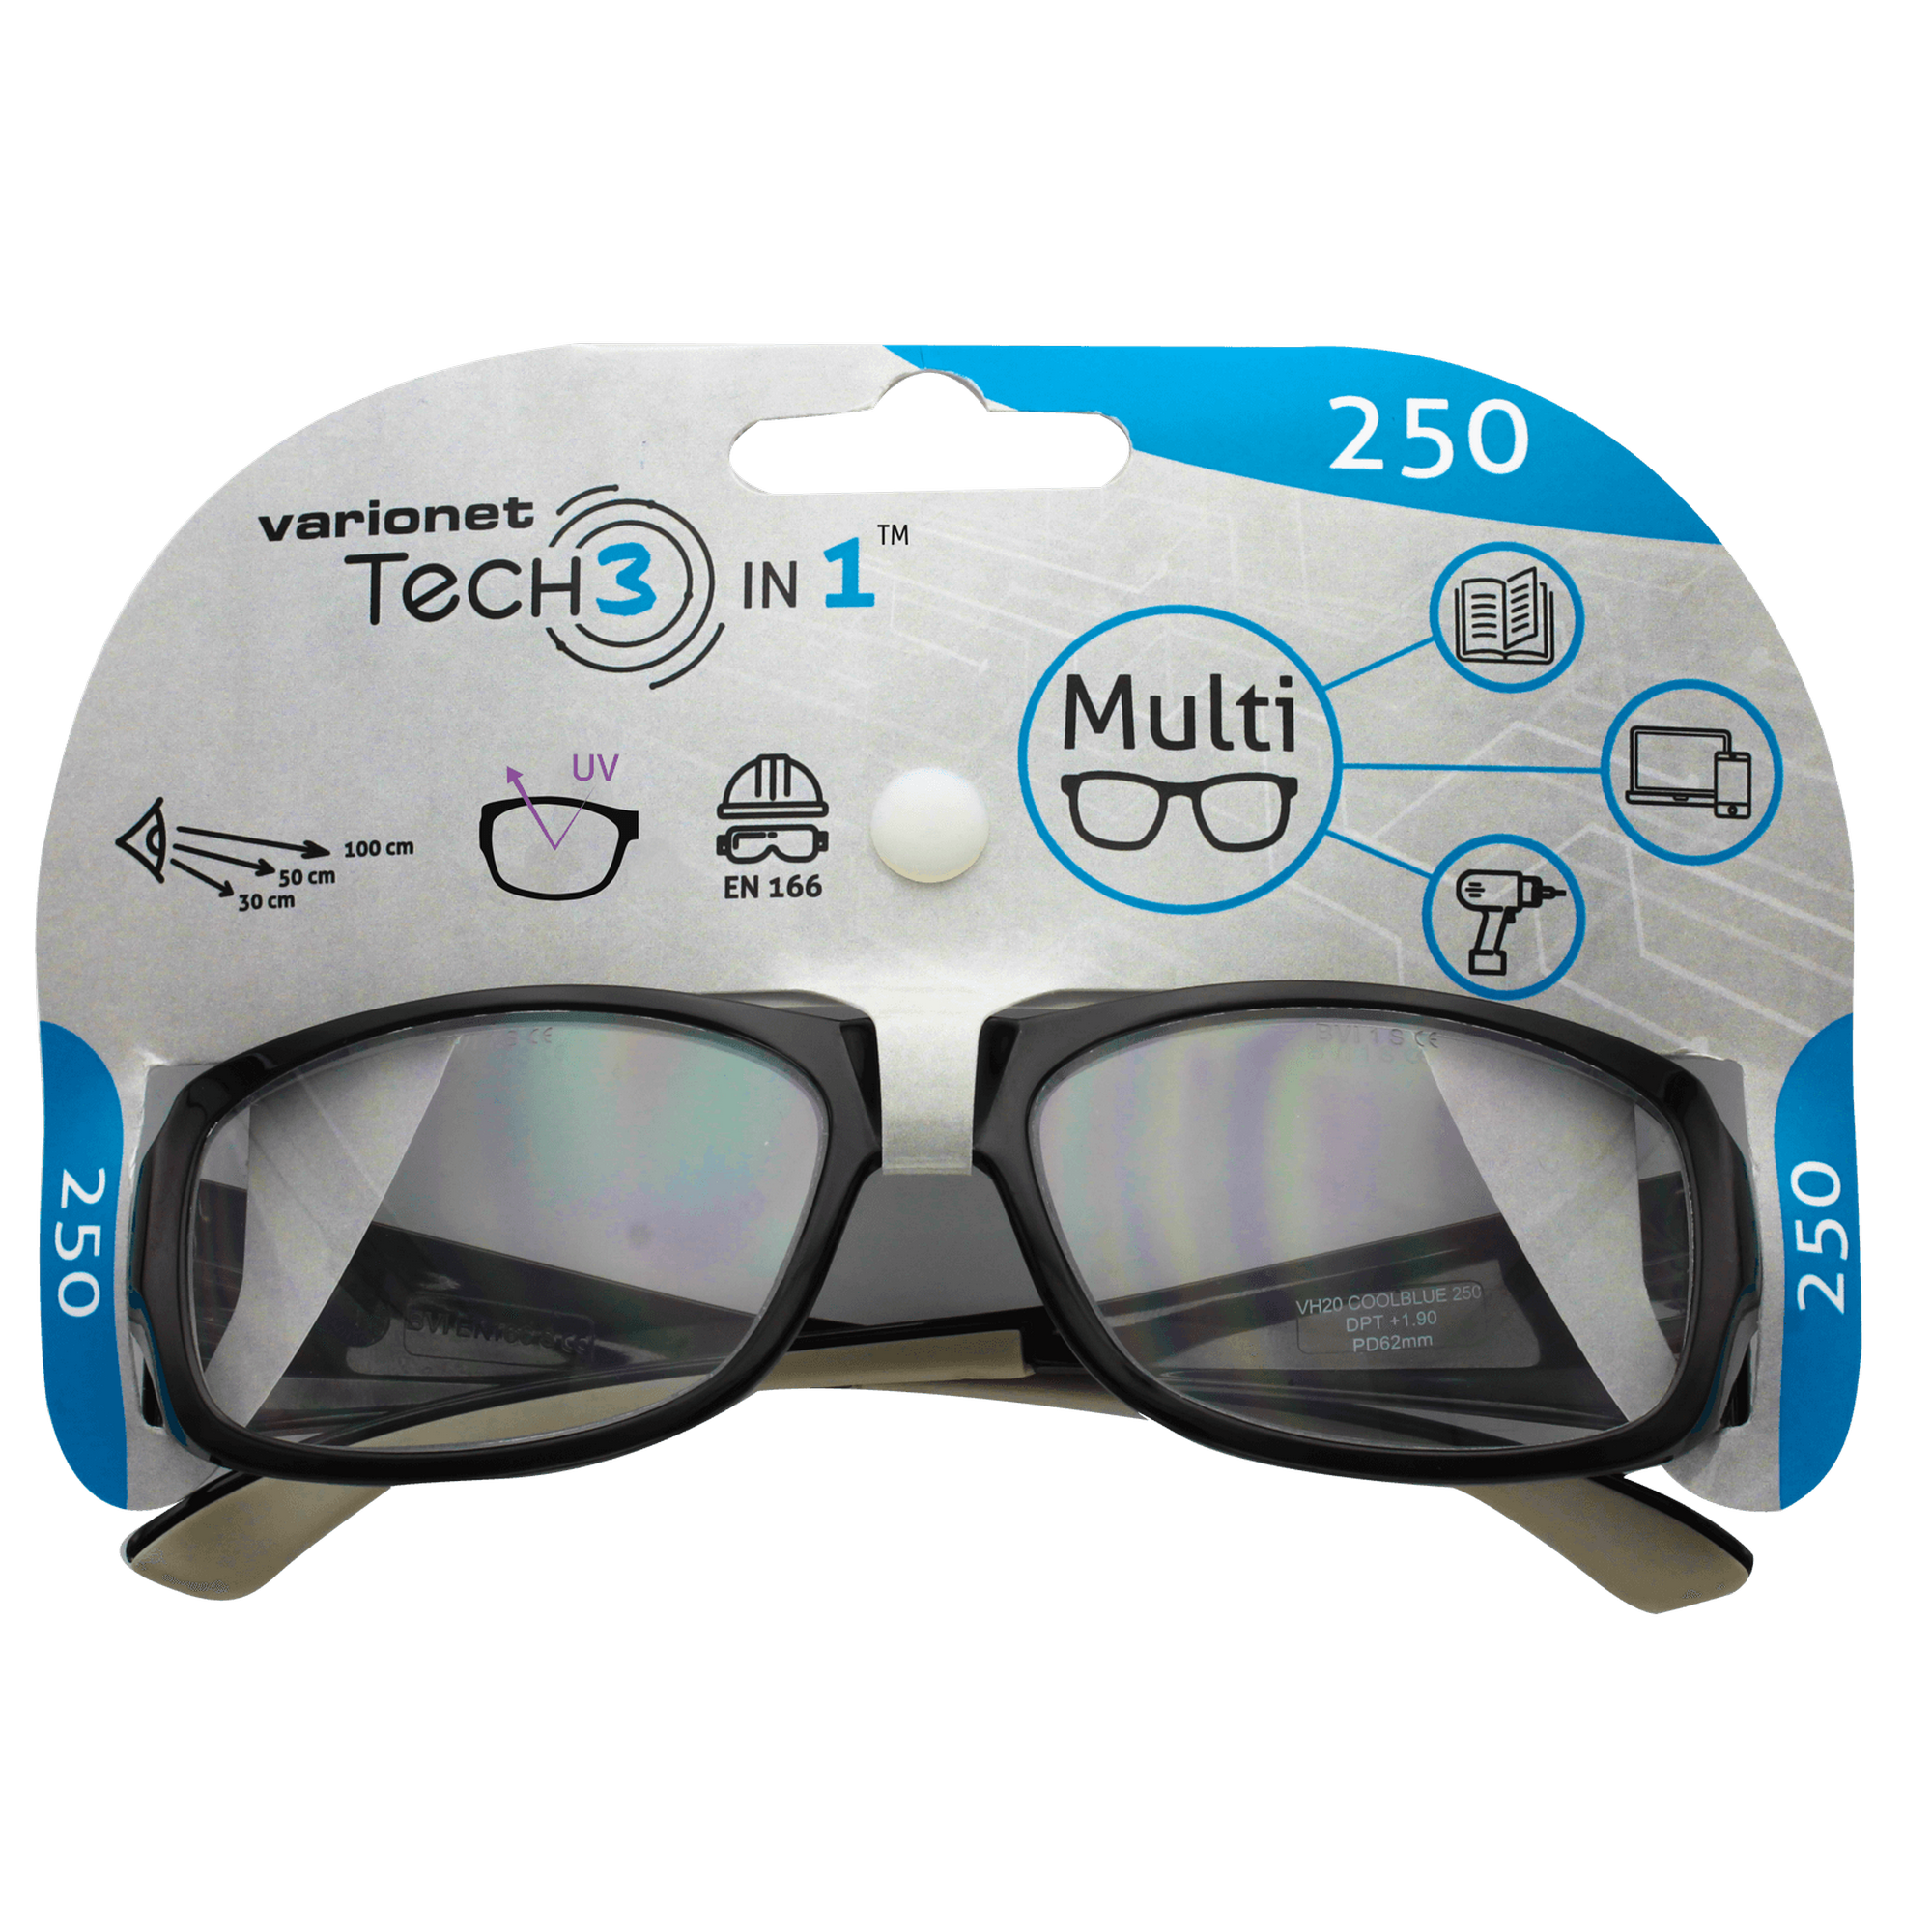 Multidistanz-Schutzbrille 'Tech 3in1 250' schwarz + 2,50 Dioptrien + product picture